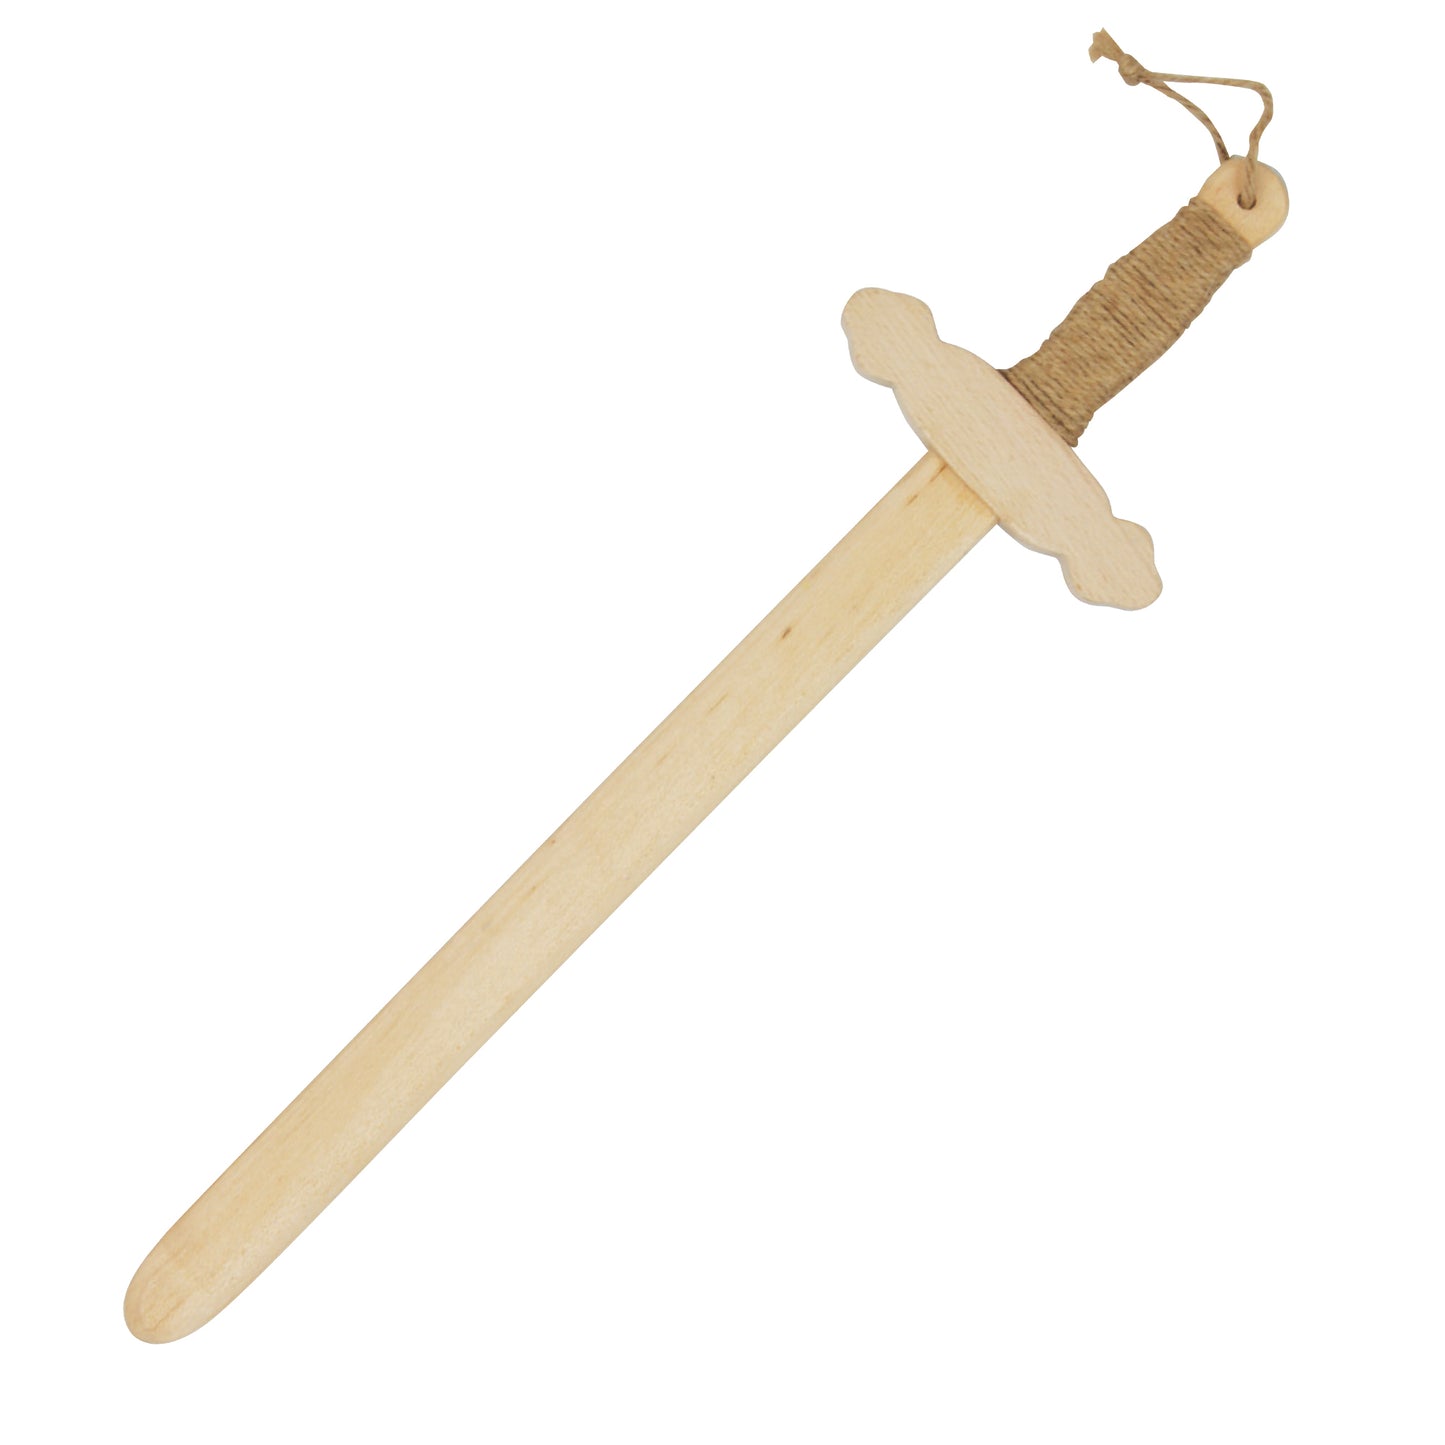 Toy Wooden Sword